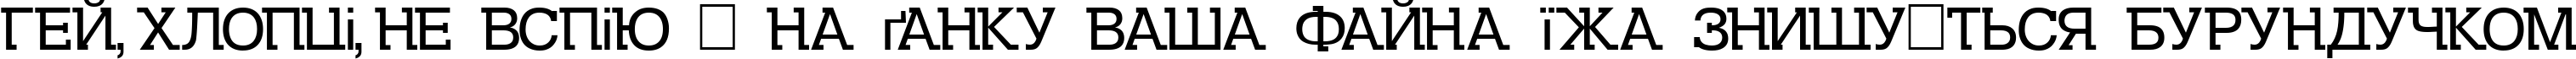 Пример написания шрифтом DS Kolovrat текста на украинском